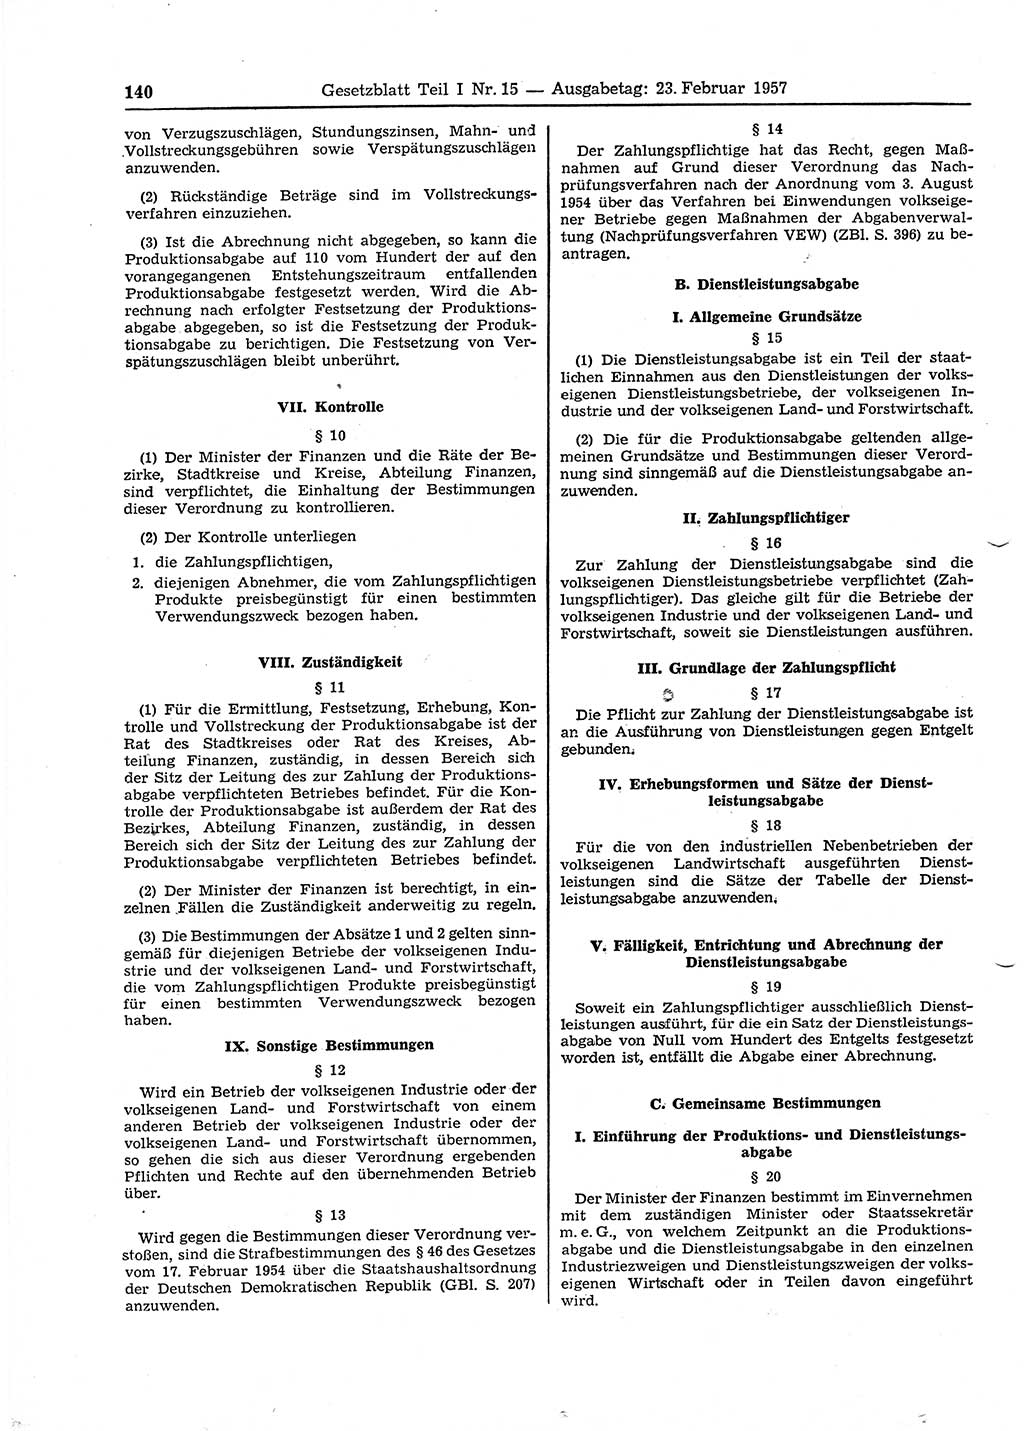 Gesetzblatt (GBl.) der Deutschen Demokratischen Republik (DDR) Teil Ⅰ 1957, Seite 140 (GBl. DDR Ⅰ 1957, S. 140)